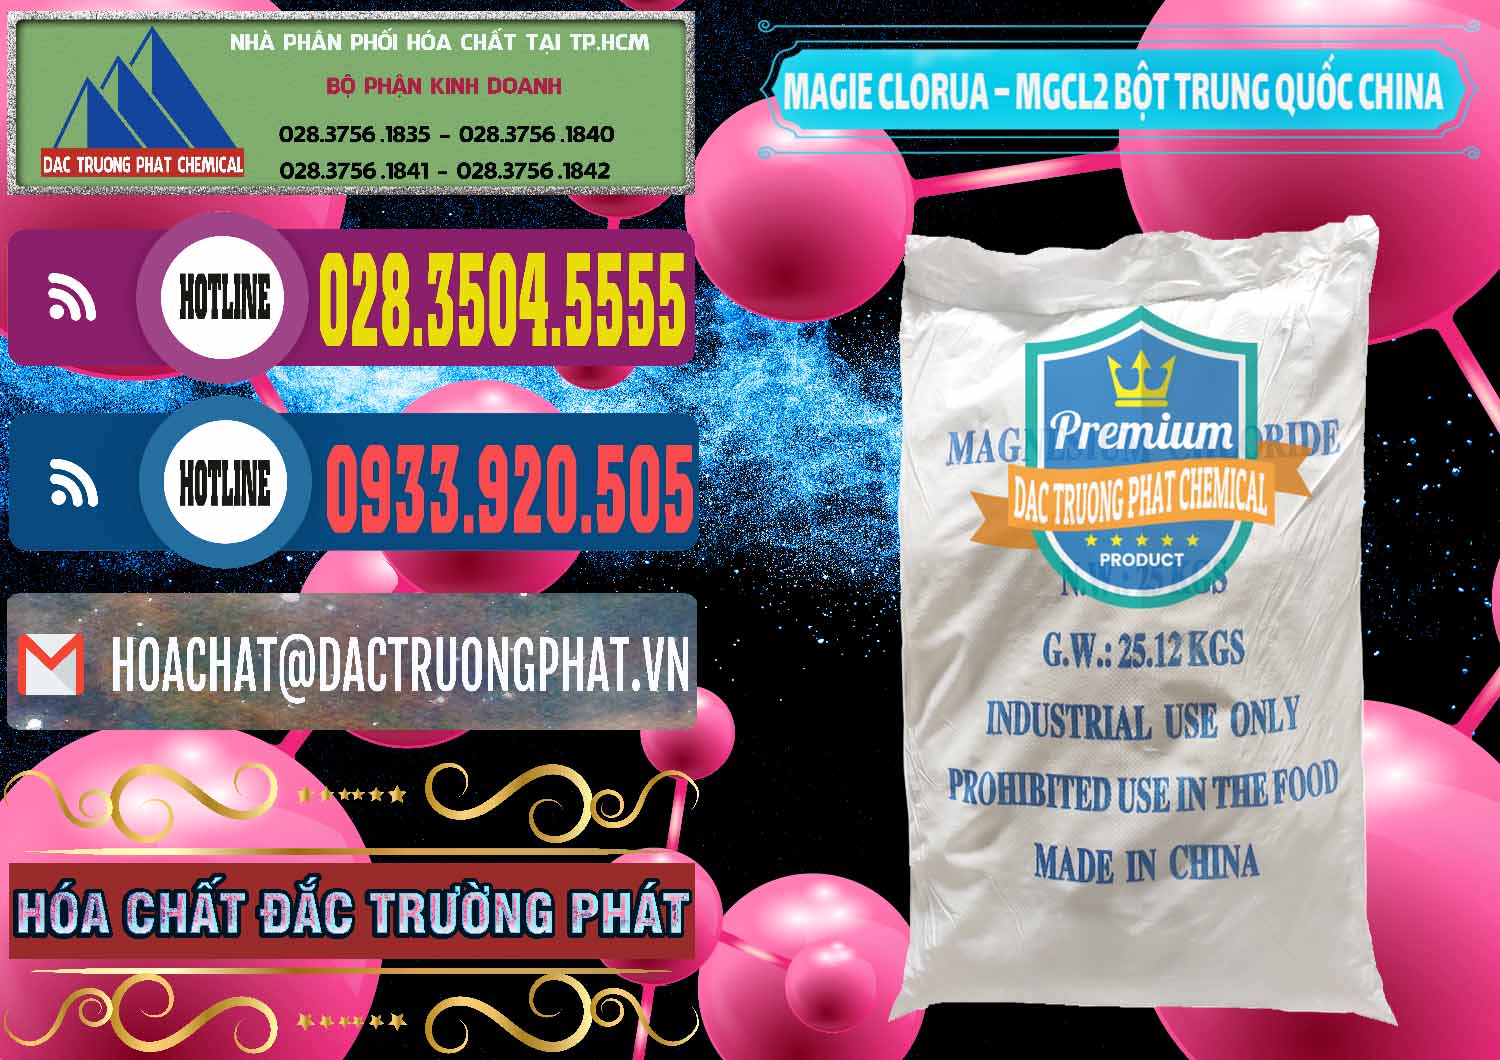 Công ty chuyên bán & phân phối Magie Clorua – MGCL2 96% Dạng Bột Bao Chữ Xanh Trung Quốc China - 0207 - Đơn vị chuyên kinh doanh và phân phối hóa chất tại TP.HCM - muabanhoachat.com.vn